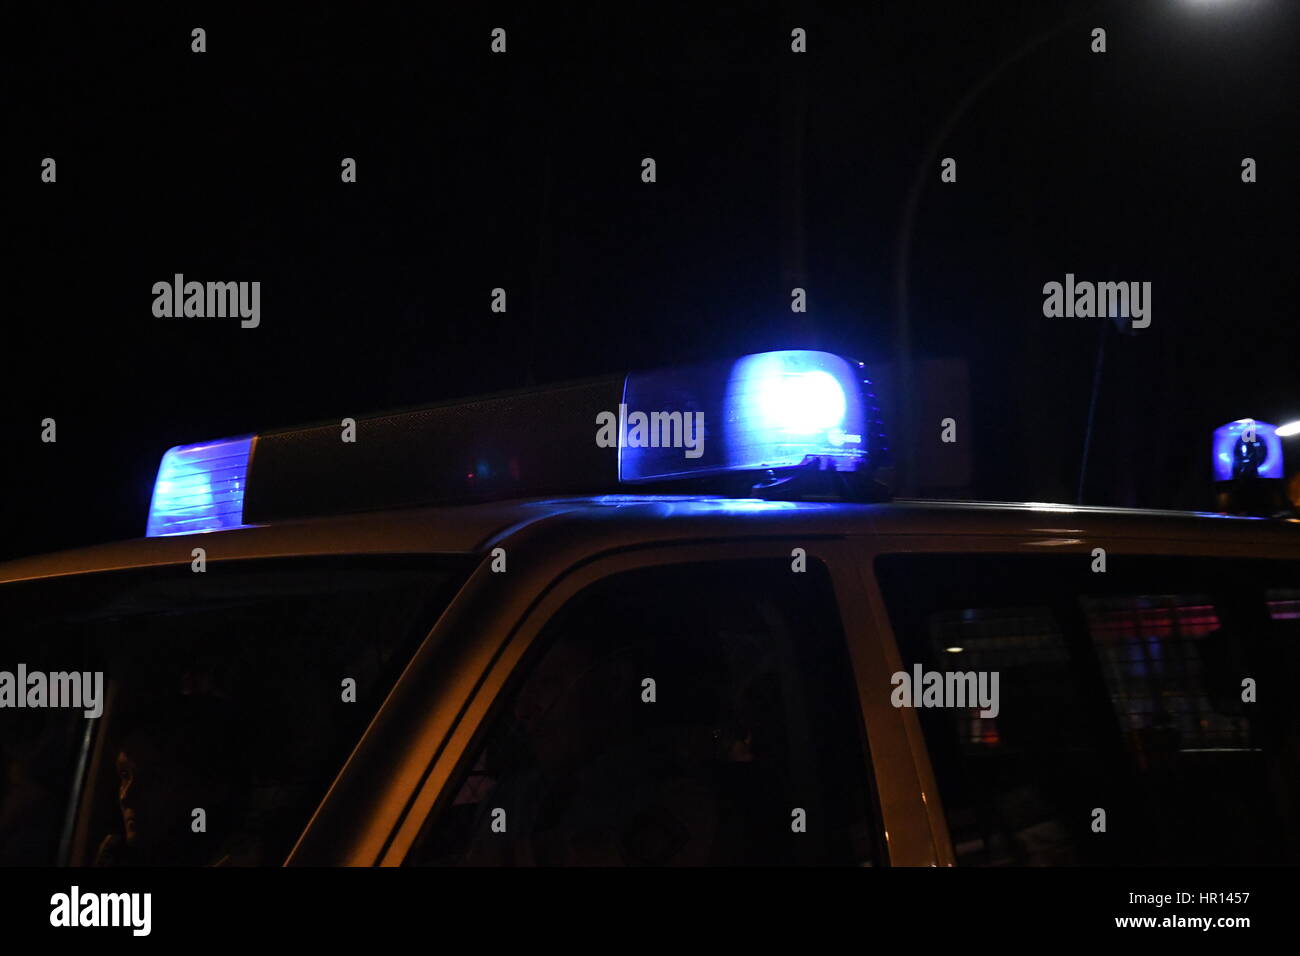 Alte Polizei Sirene und rote Lichter aus 50er und 60er Jahren  Stockfotografie - Alamy